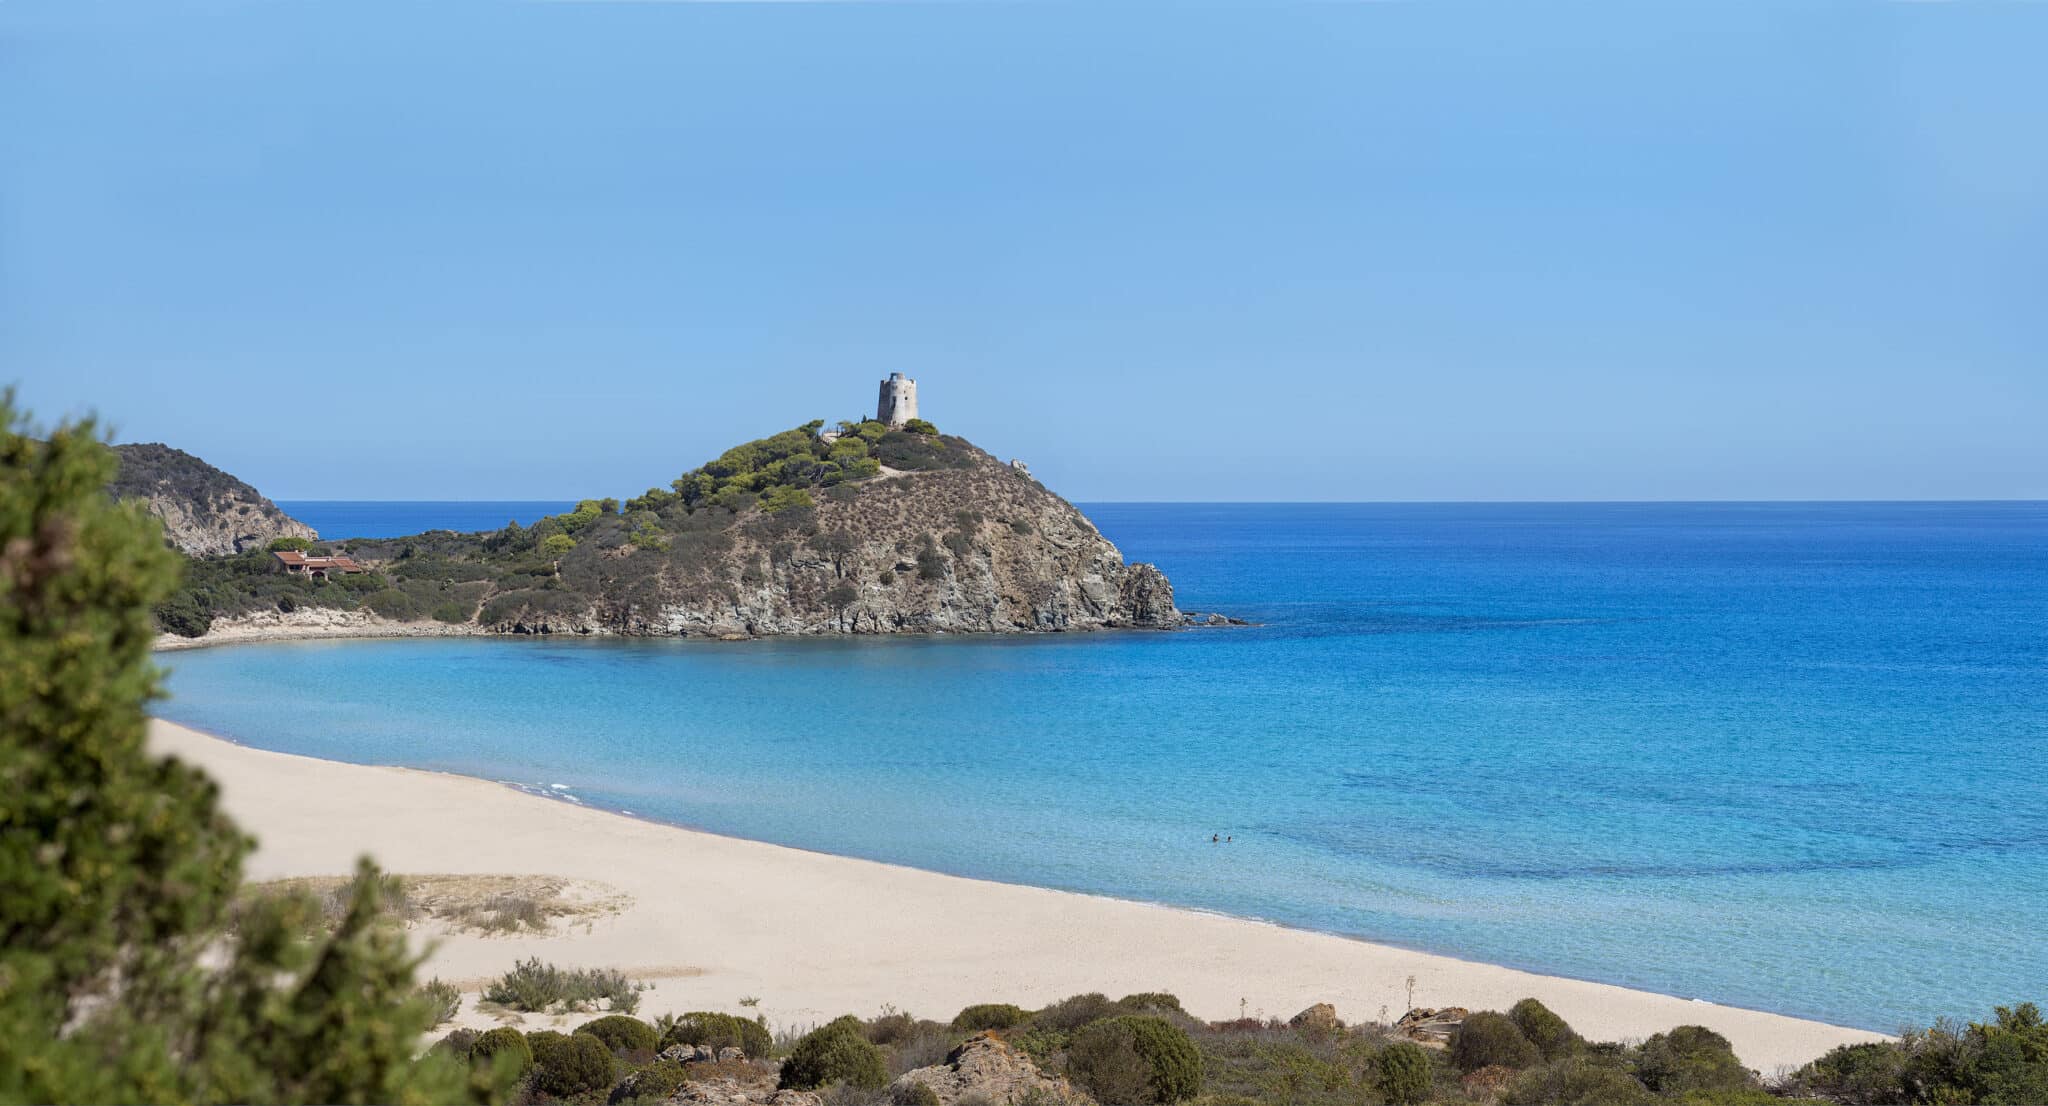 Курорт расположен в живописном уголке Киа на юго-западе Сардинии. Побережье Киа — уникальное место, которое несколько лет подряд было удостоено Five Blue Sails от ассоциации Legambiente за чистоту моря и пляжа.